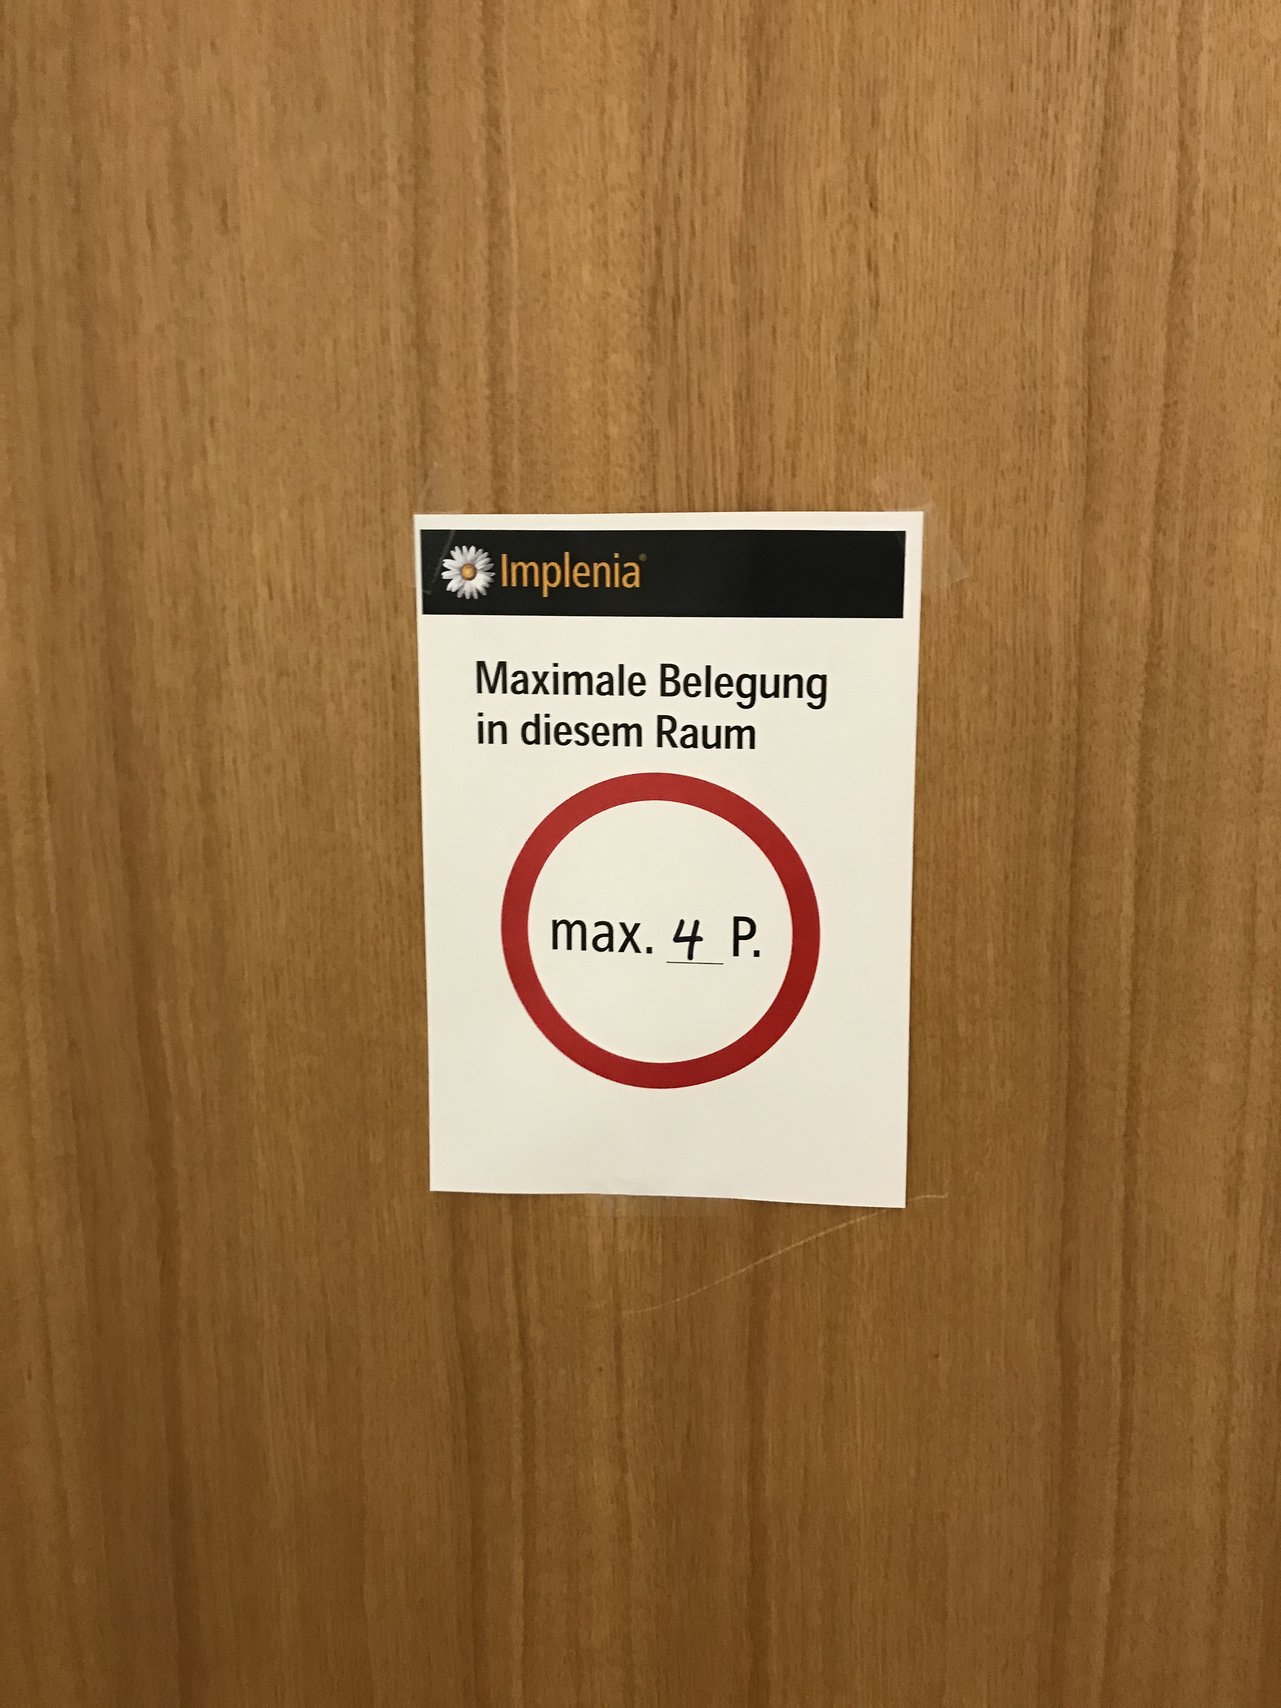  Salles de réunion : Le nombre maximum de personnes autorisées est indiqué sur les portes des salles de réunion.